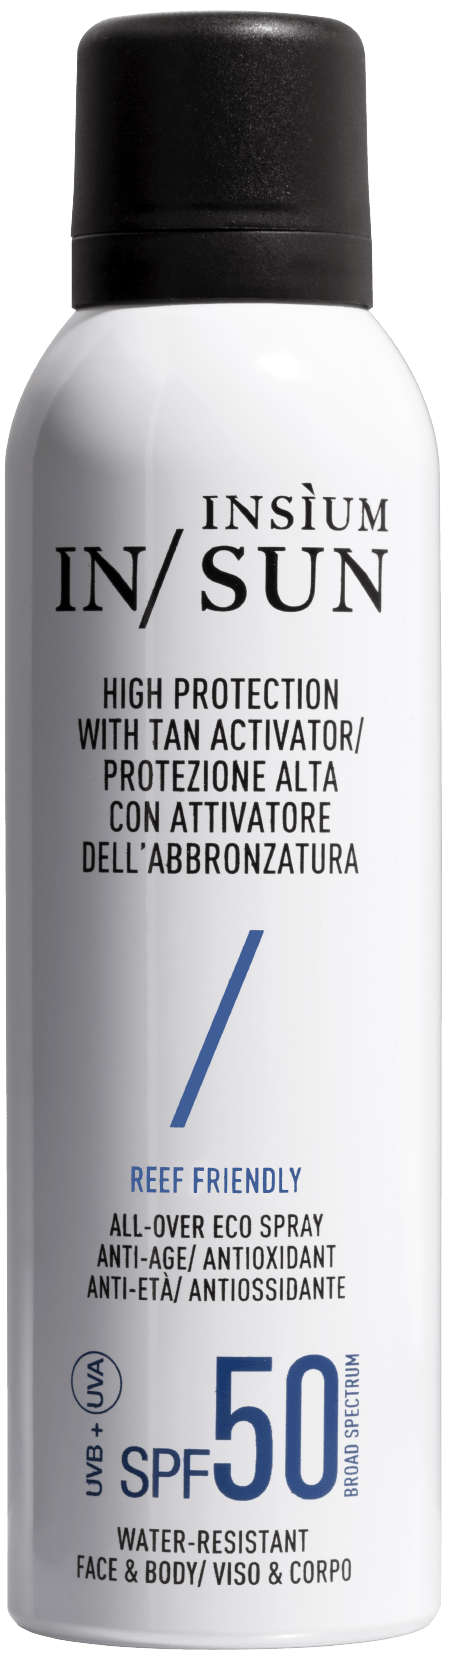 INSIUM - PROTEZIONE ALTA SPF50 - Carillon Profumeria